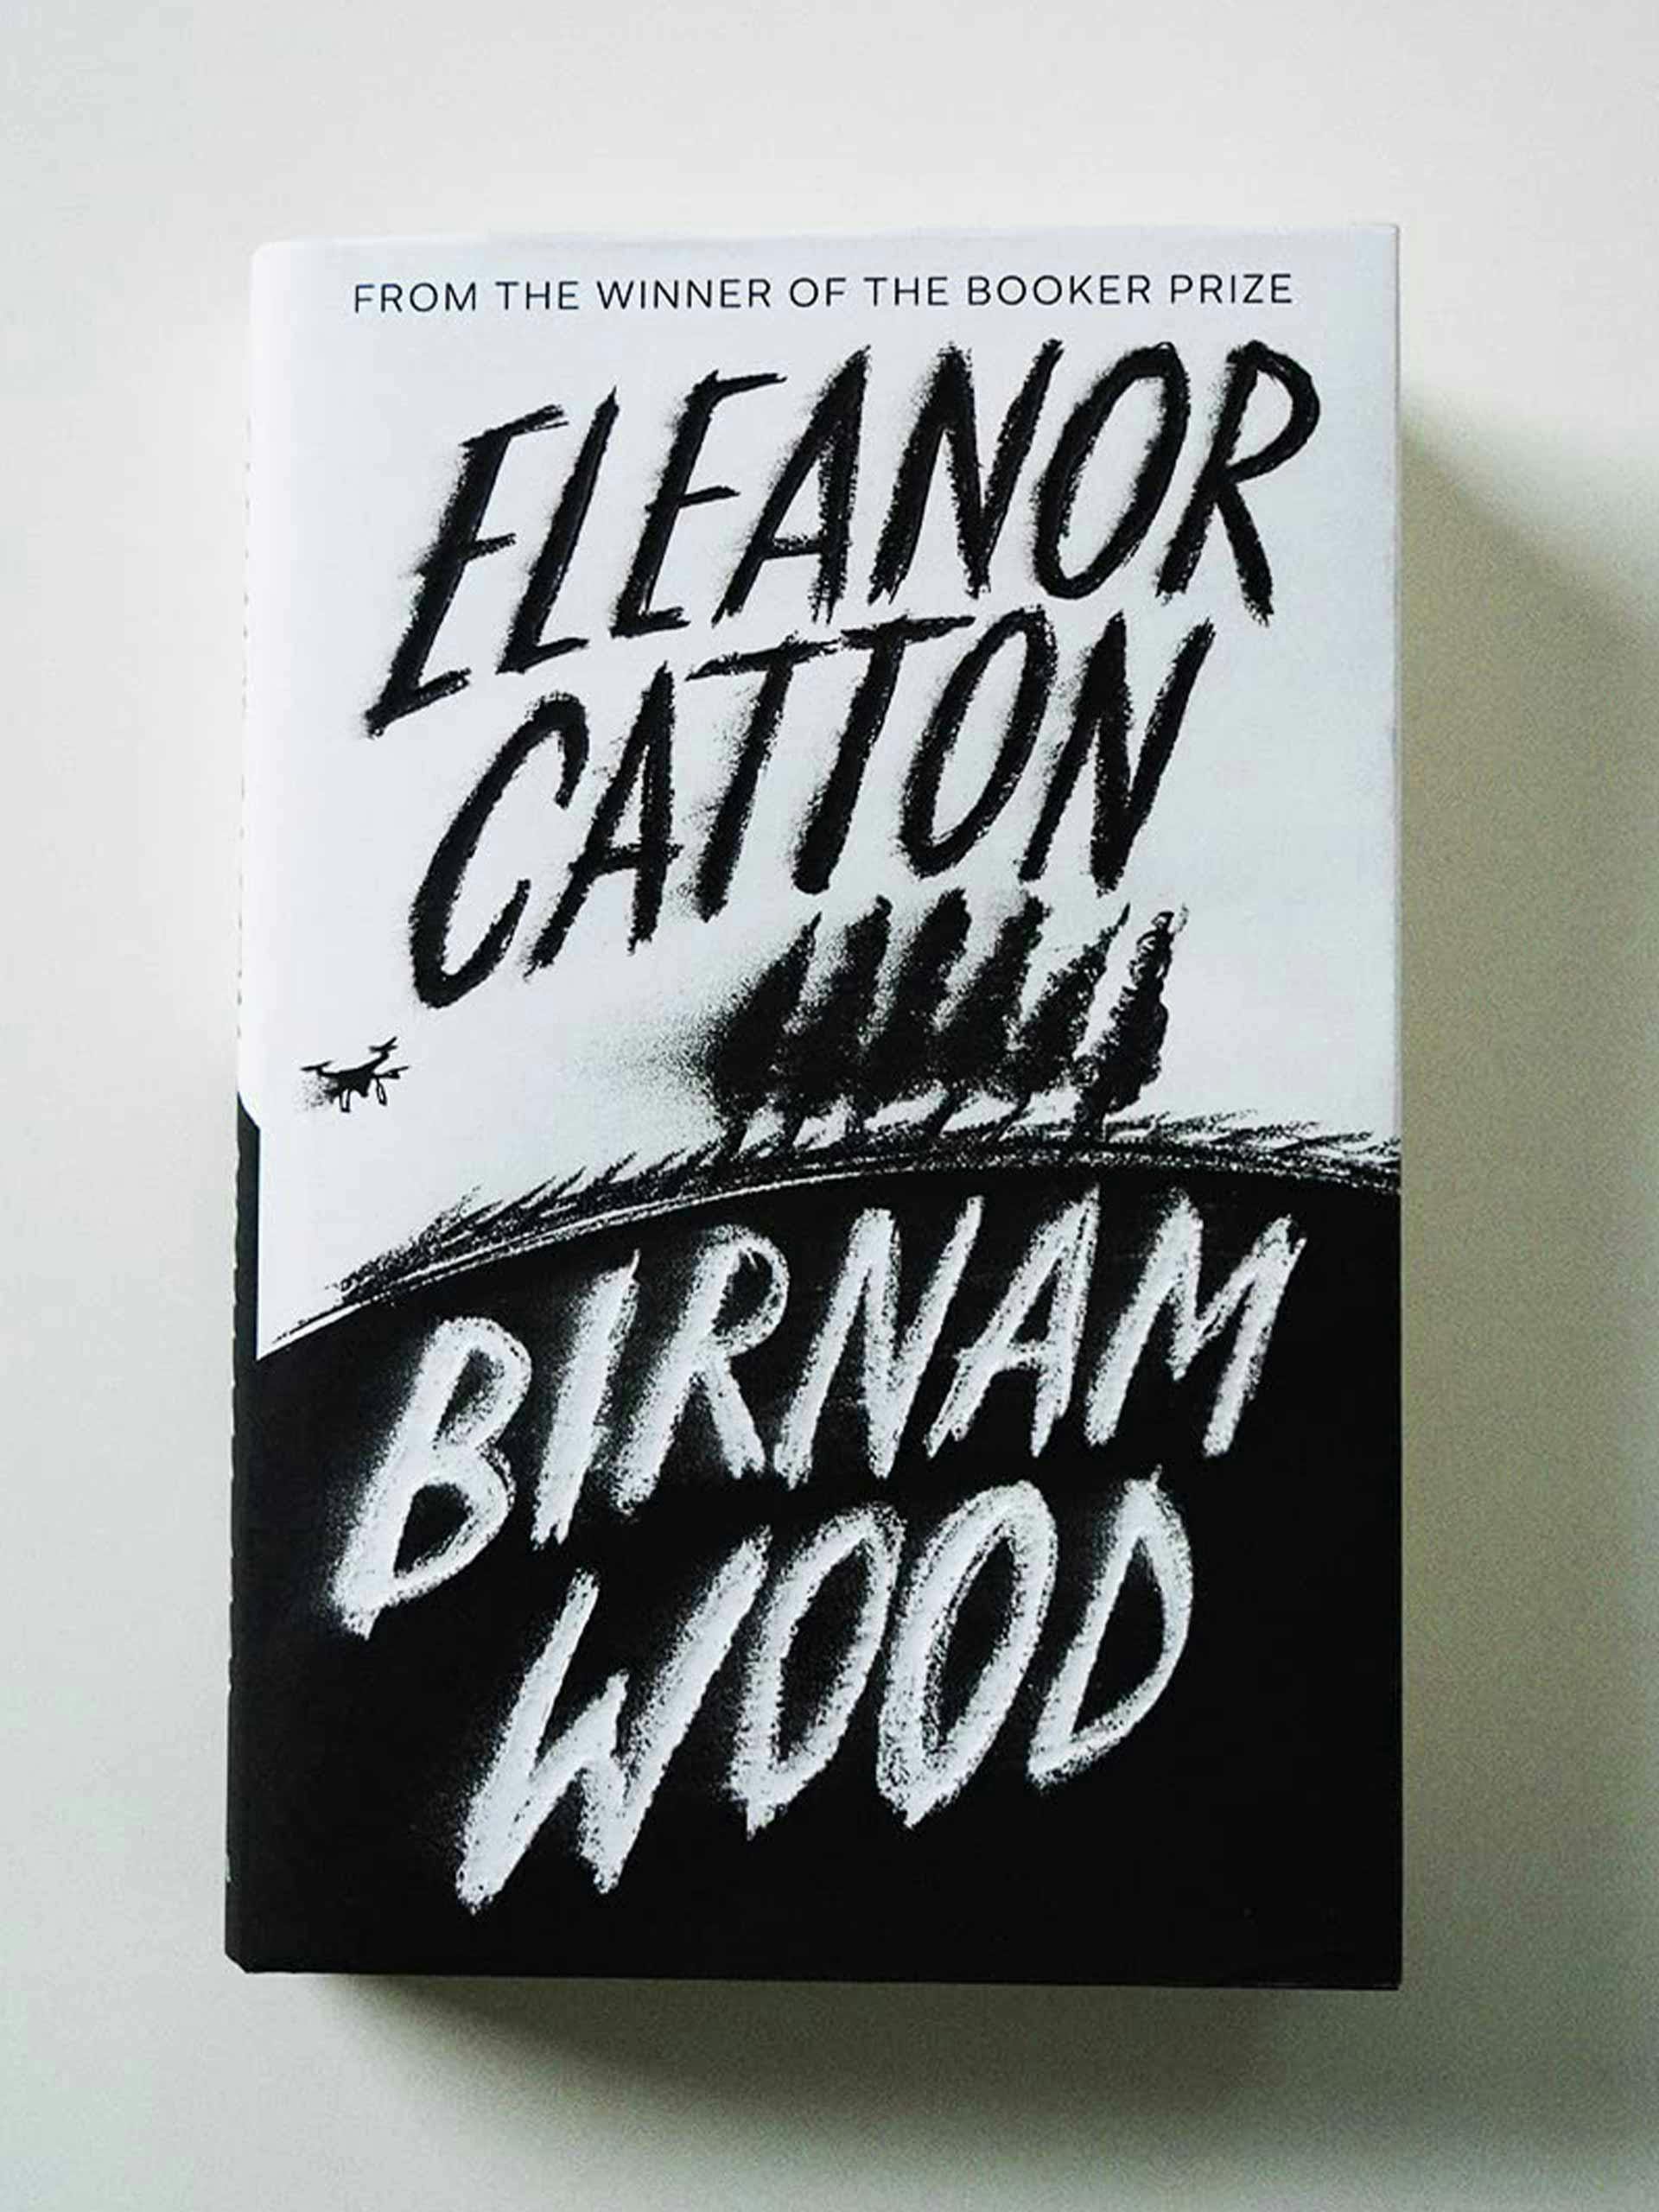 Eleanor Catton